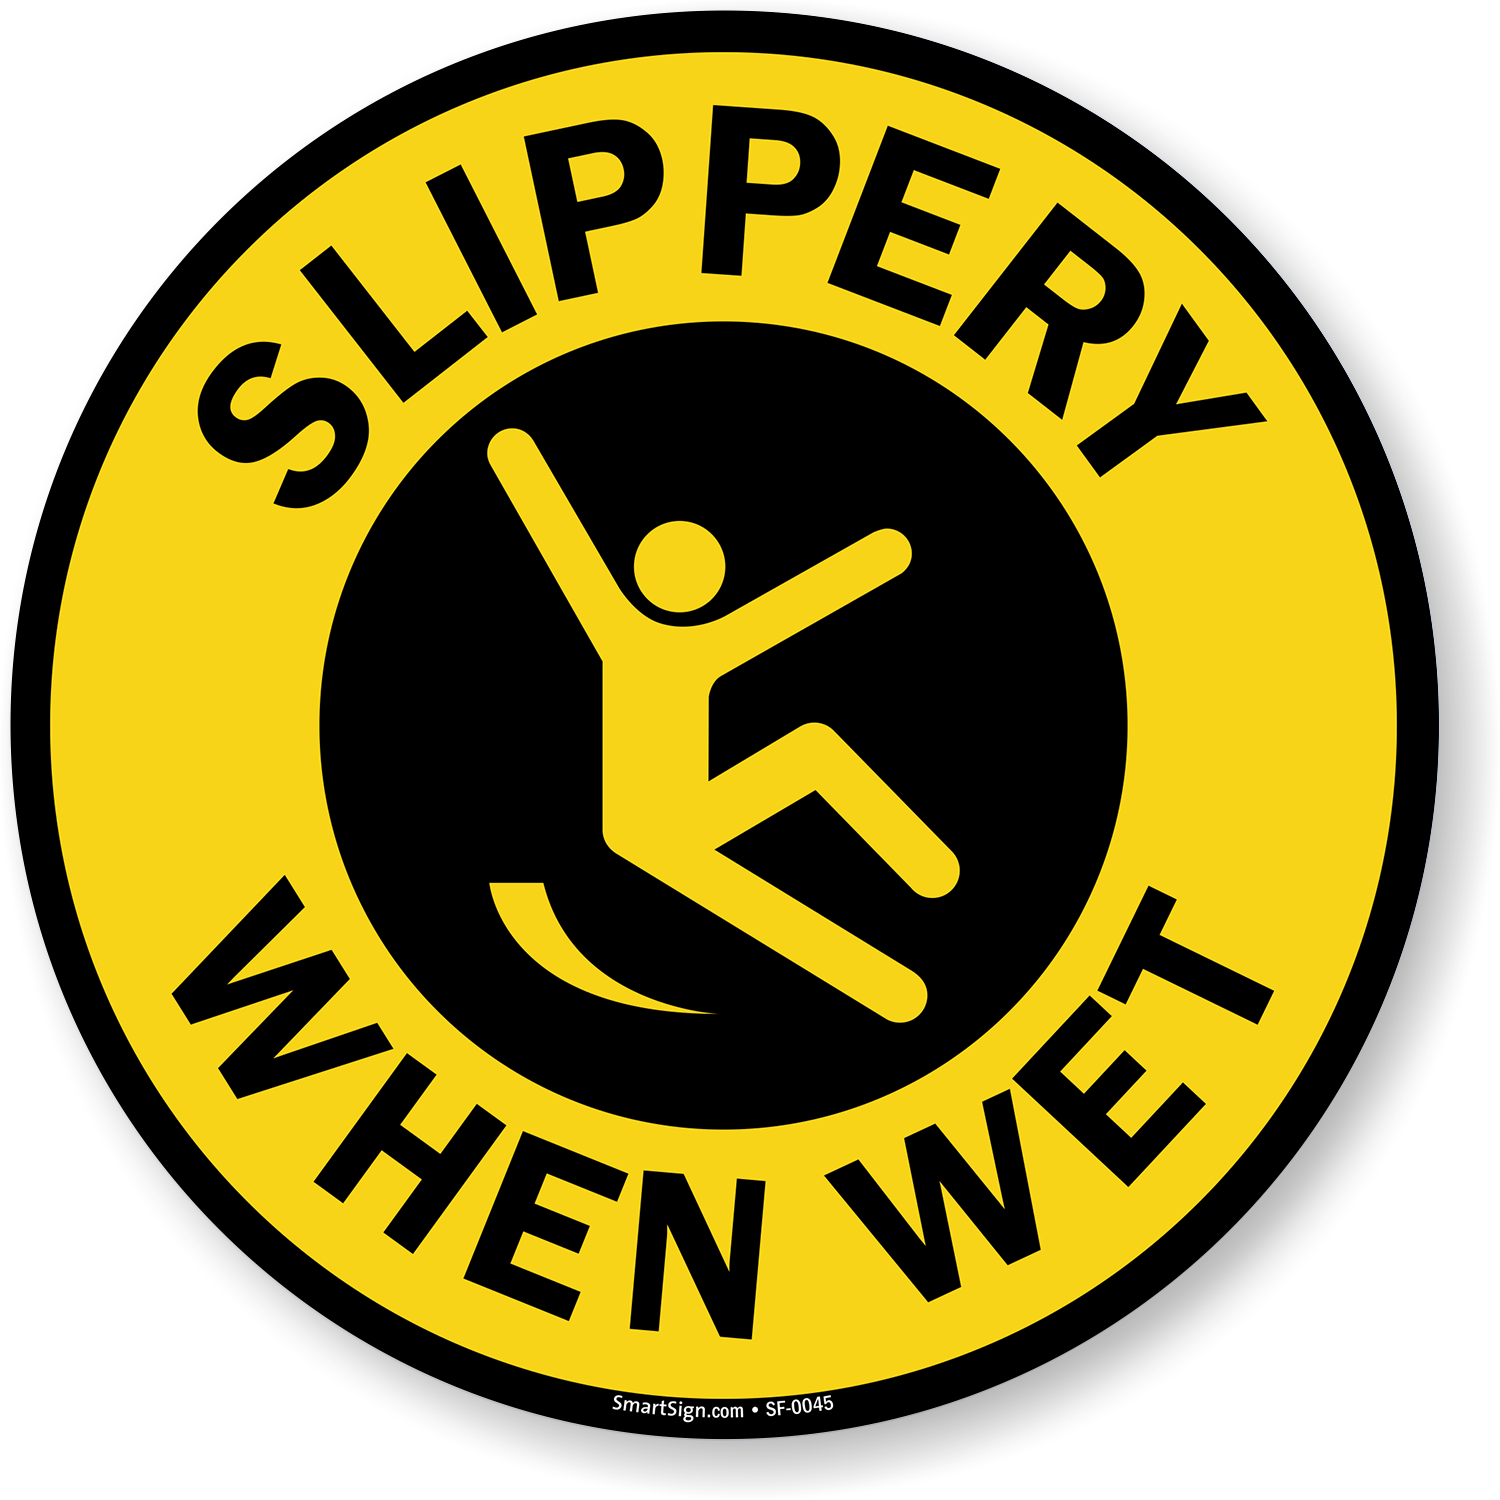 La prudence étage Slippery When Wet 30 cm 20 cm 10 cm vinyle autocollant de signe d'avertissement R158 